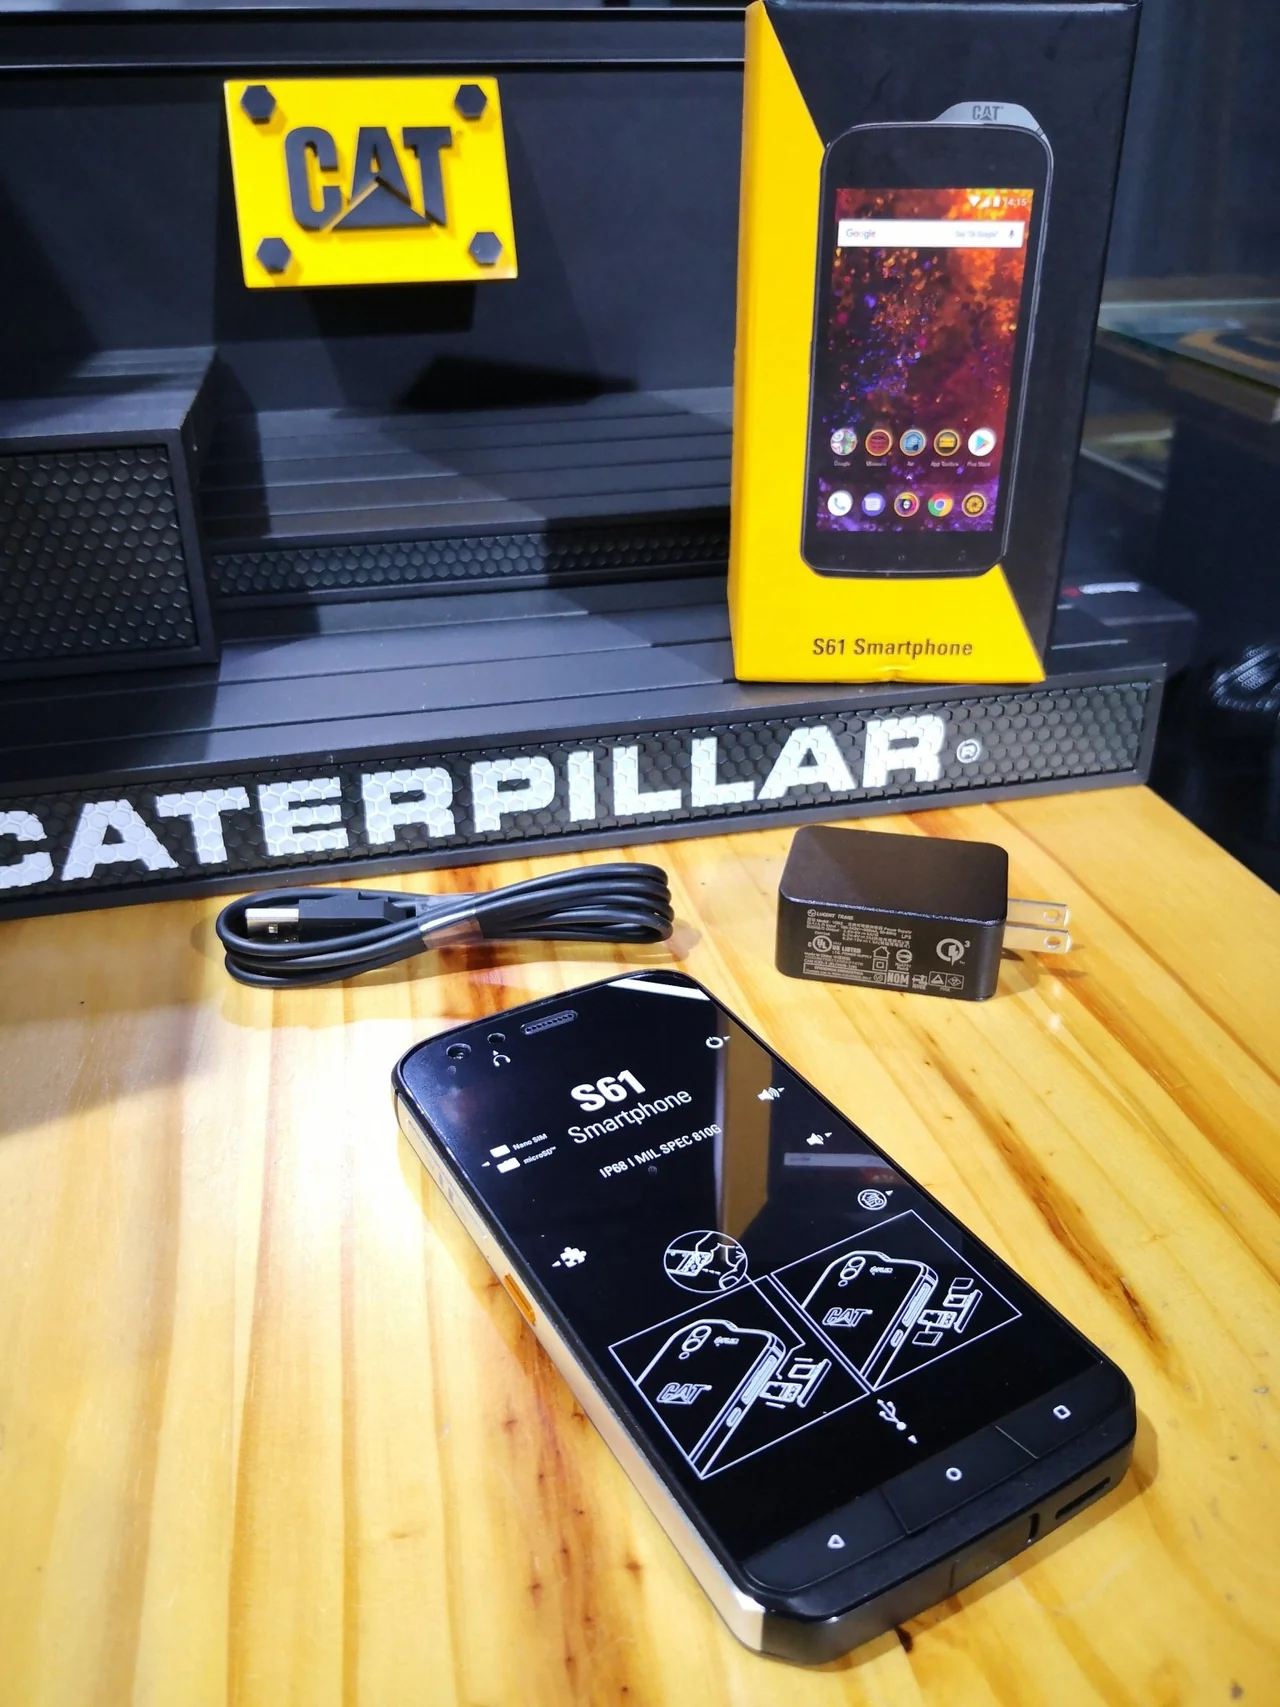 Celular CAT Caterpillar CAT S61 Smartphone Con Tecnología MSX® de FLIR  camara termica FLIR® Medida de Distancia Asistida por Laser. Monitoreo  Temperatura y Calidad del Aire en Interiores. Waterproof Impermeable  Resistente a